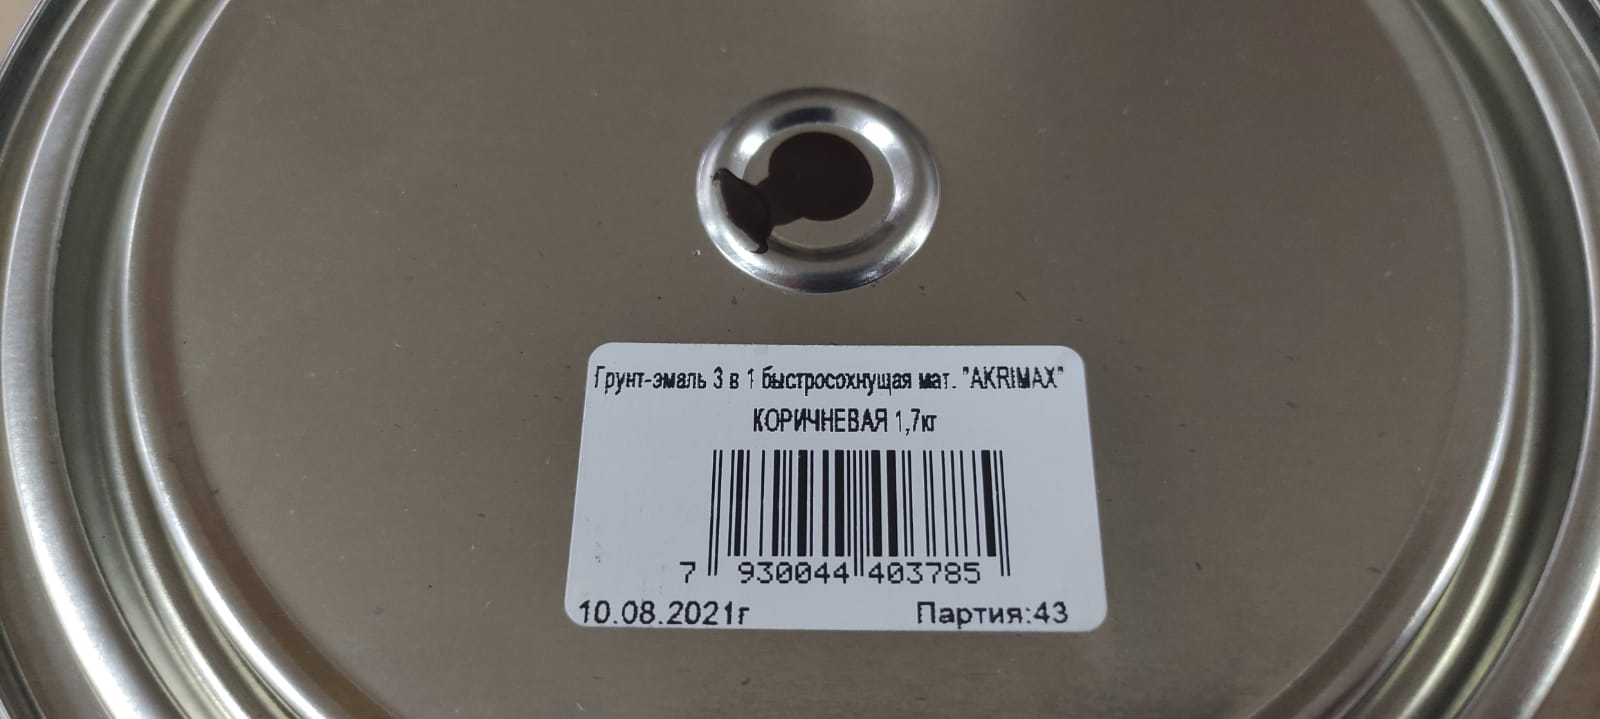 Грунт - эмаль по ржавчине 3 в1 быстросохнущая матовая Akrimax 1,7 кг (коричневая)								